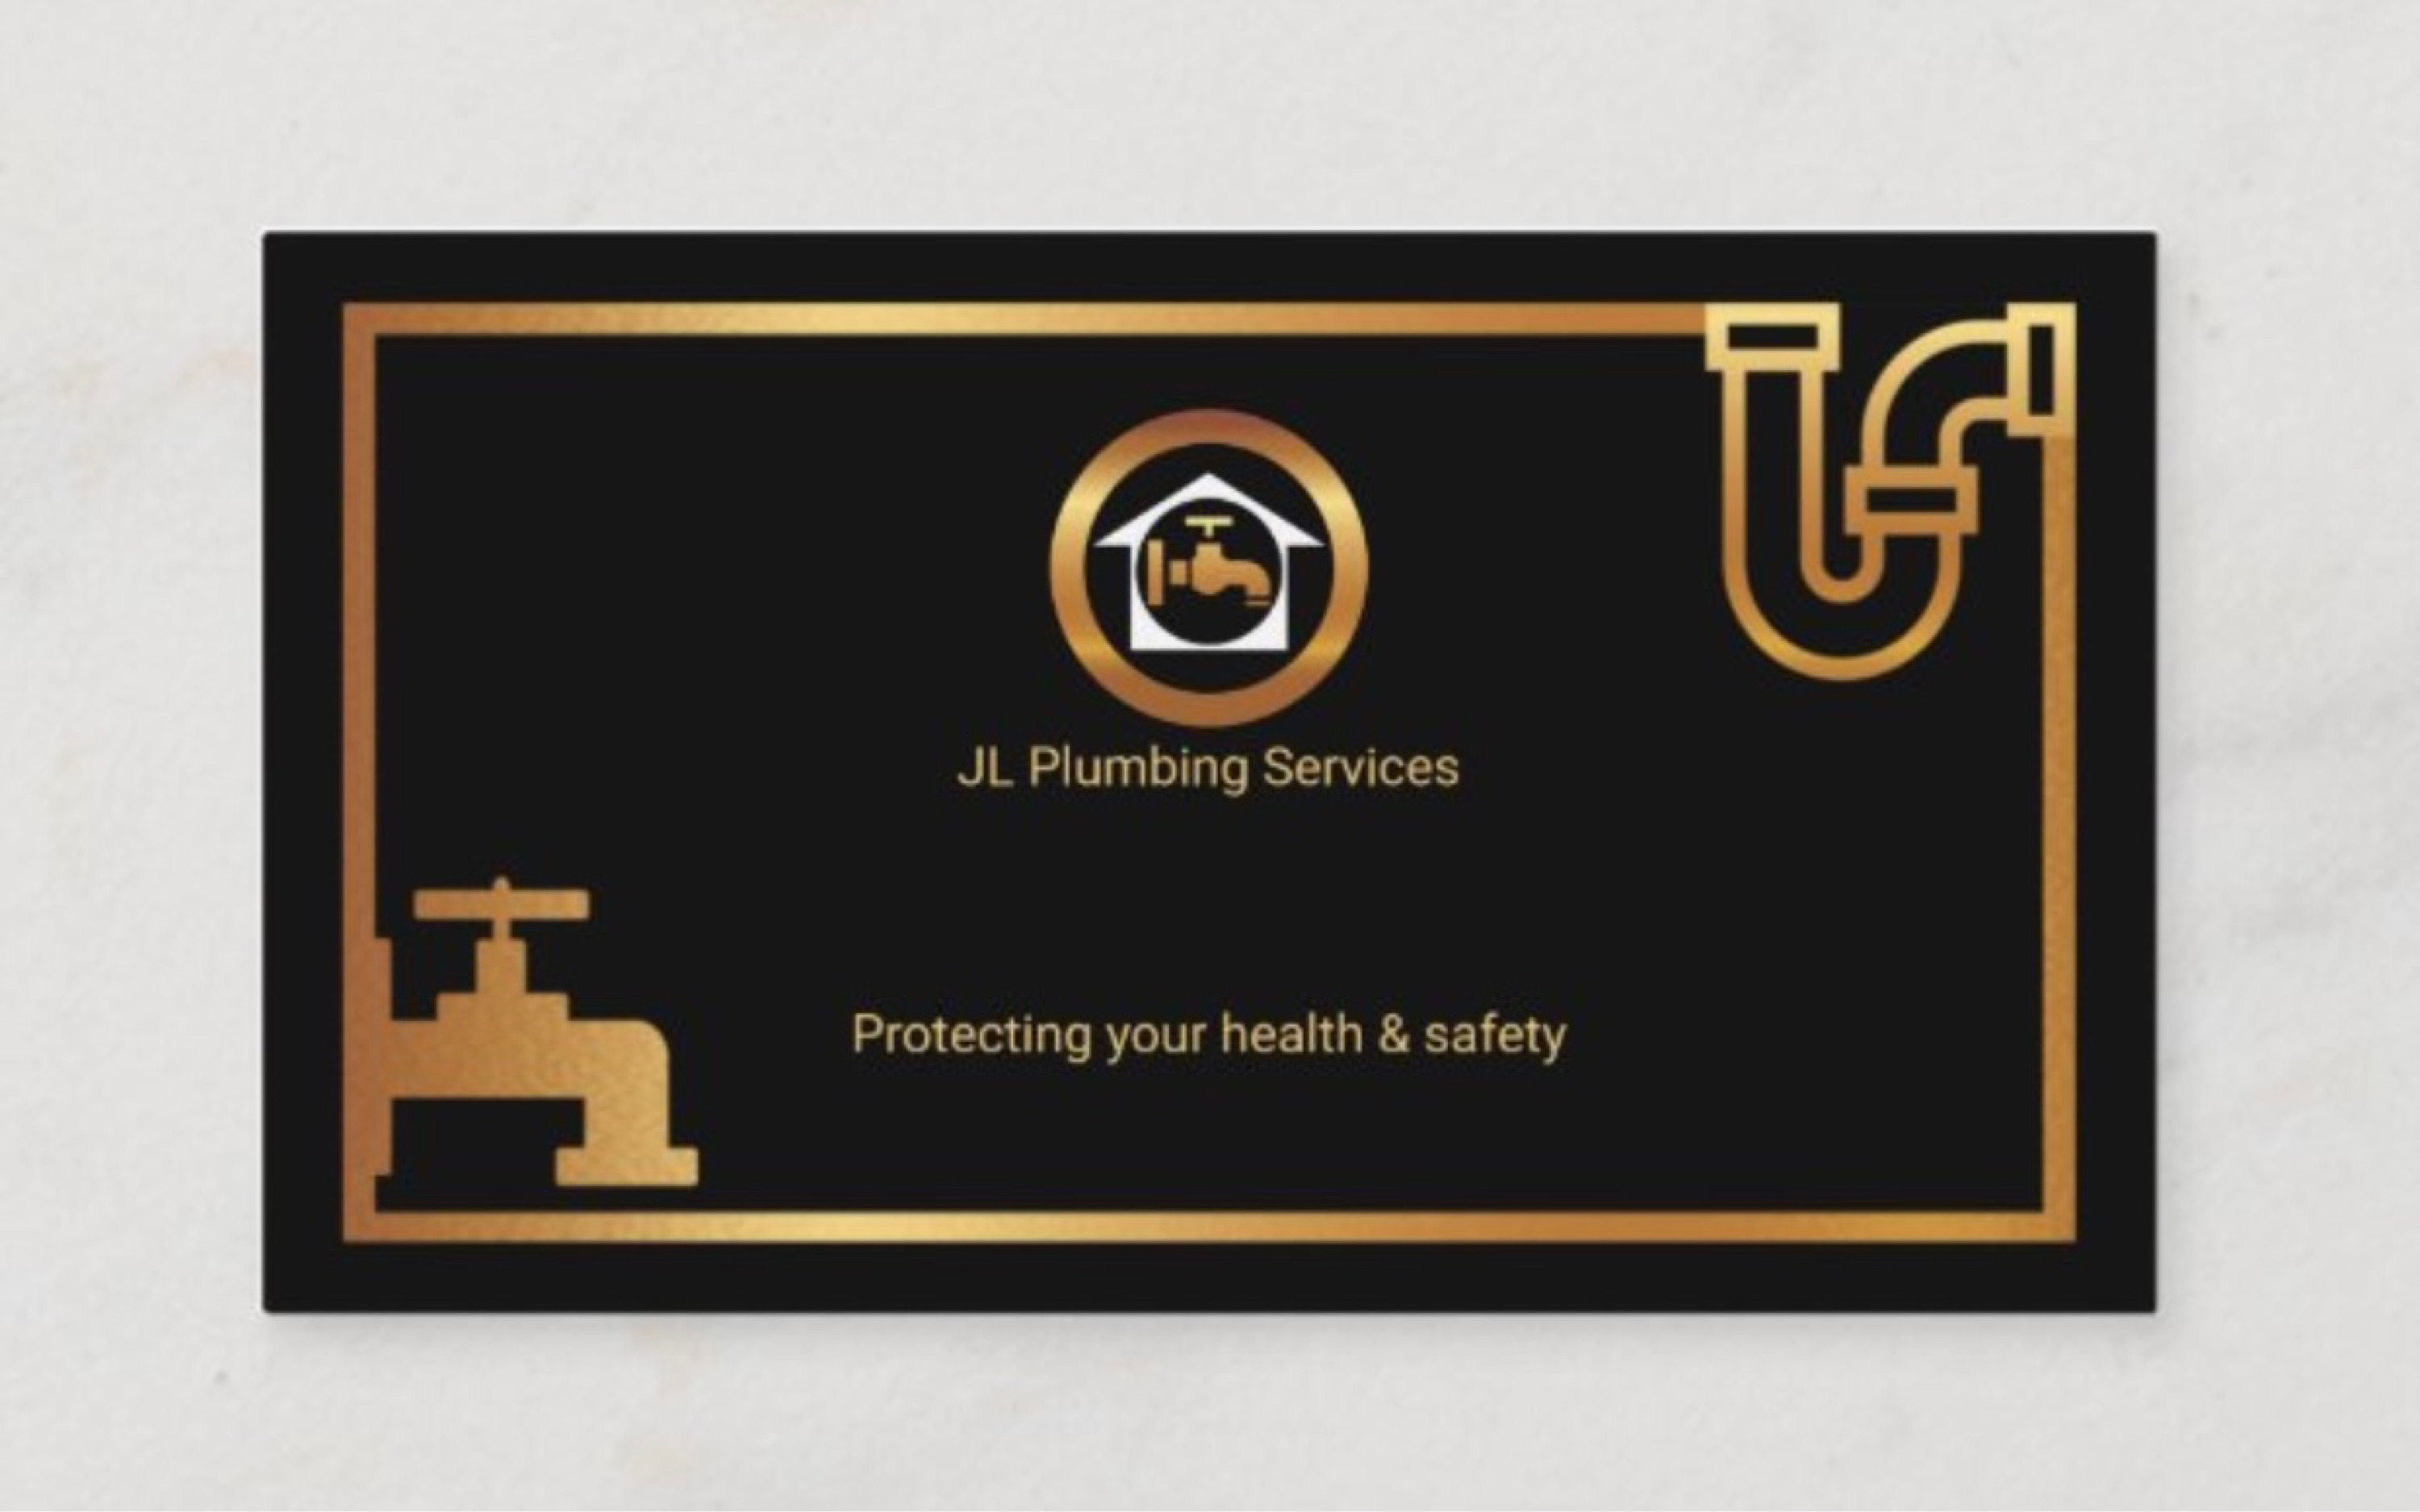 JL Plumbing Services - Unlicensed Contractor Logo